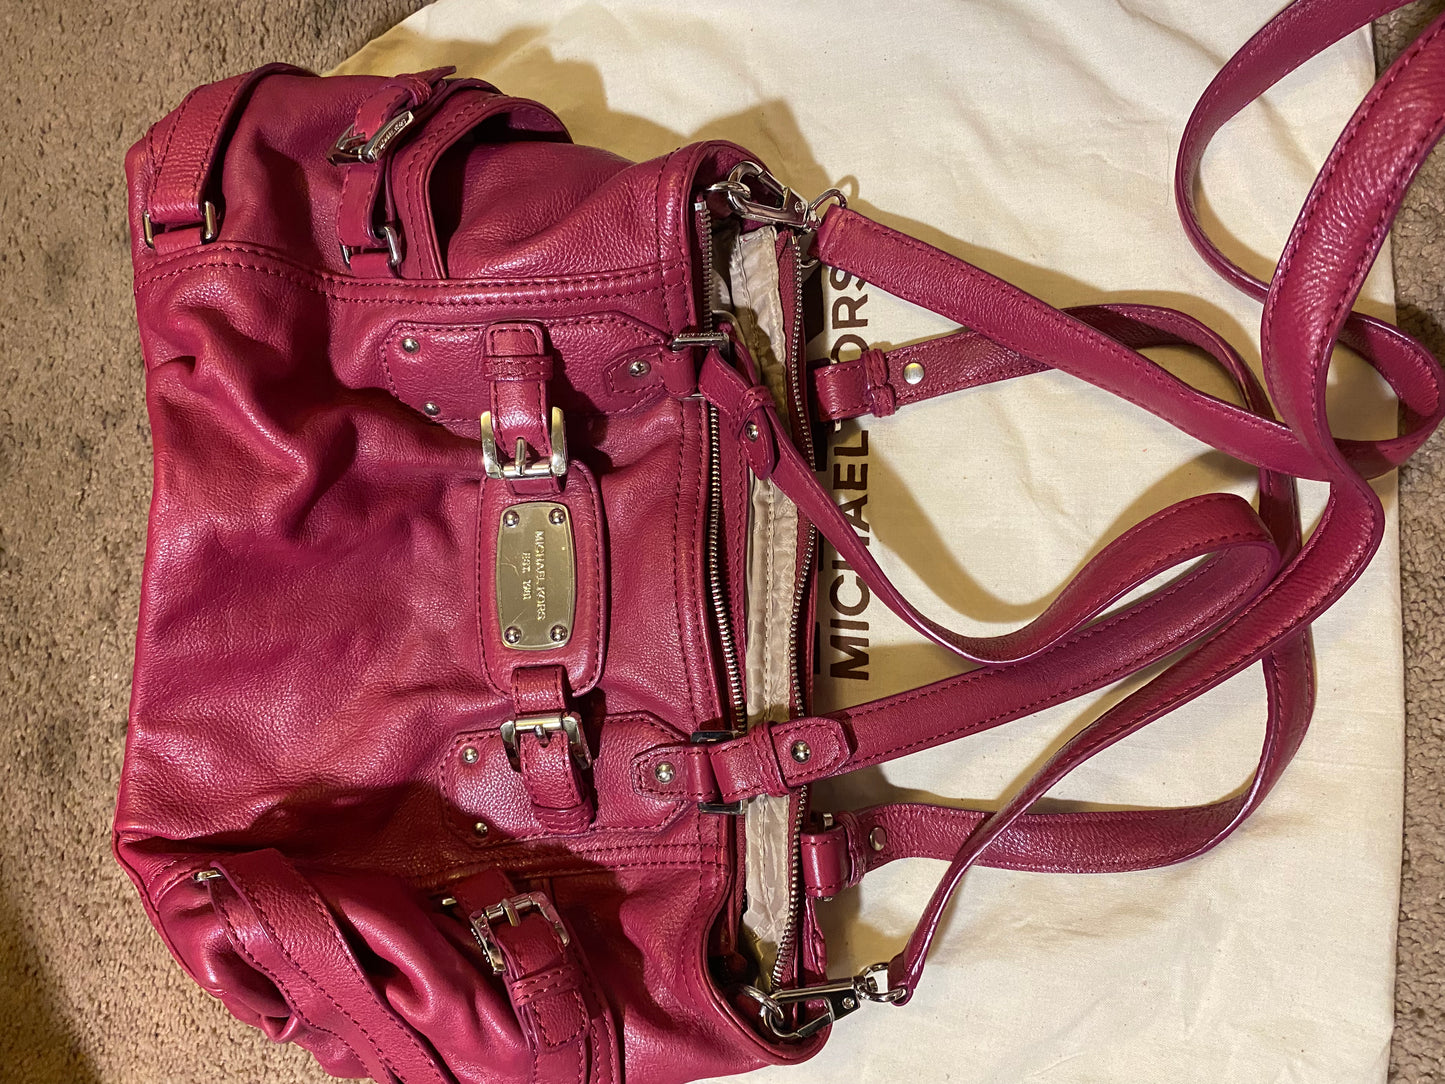 Used Bags: Magenta Michael Kors Bag